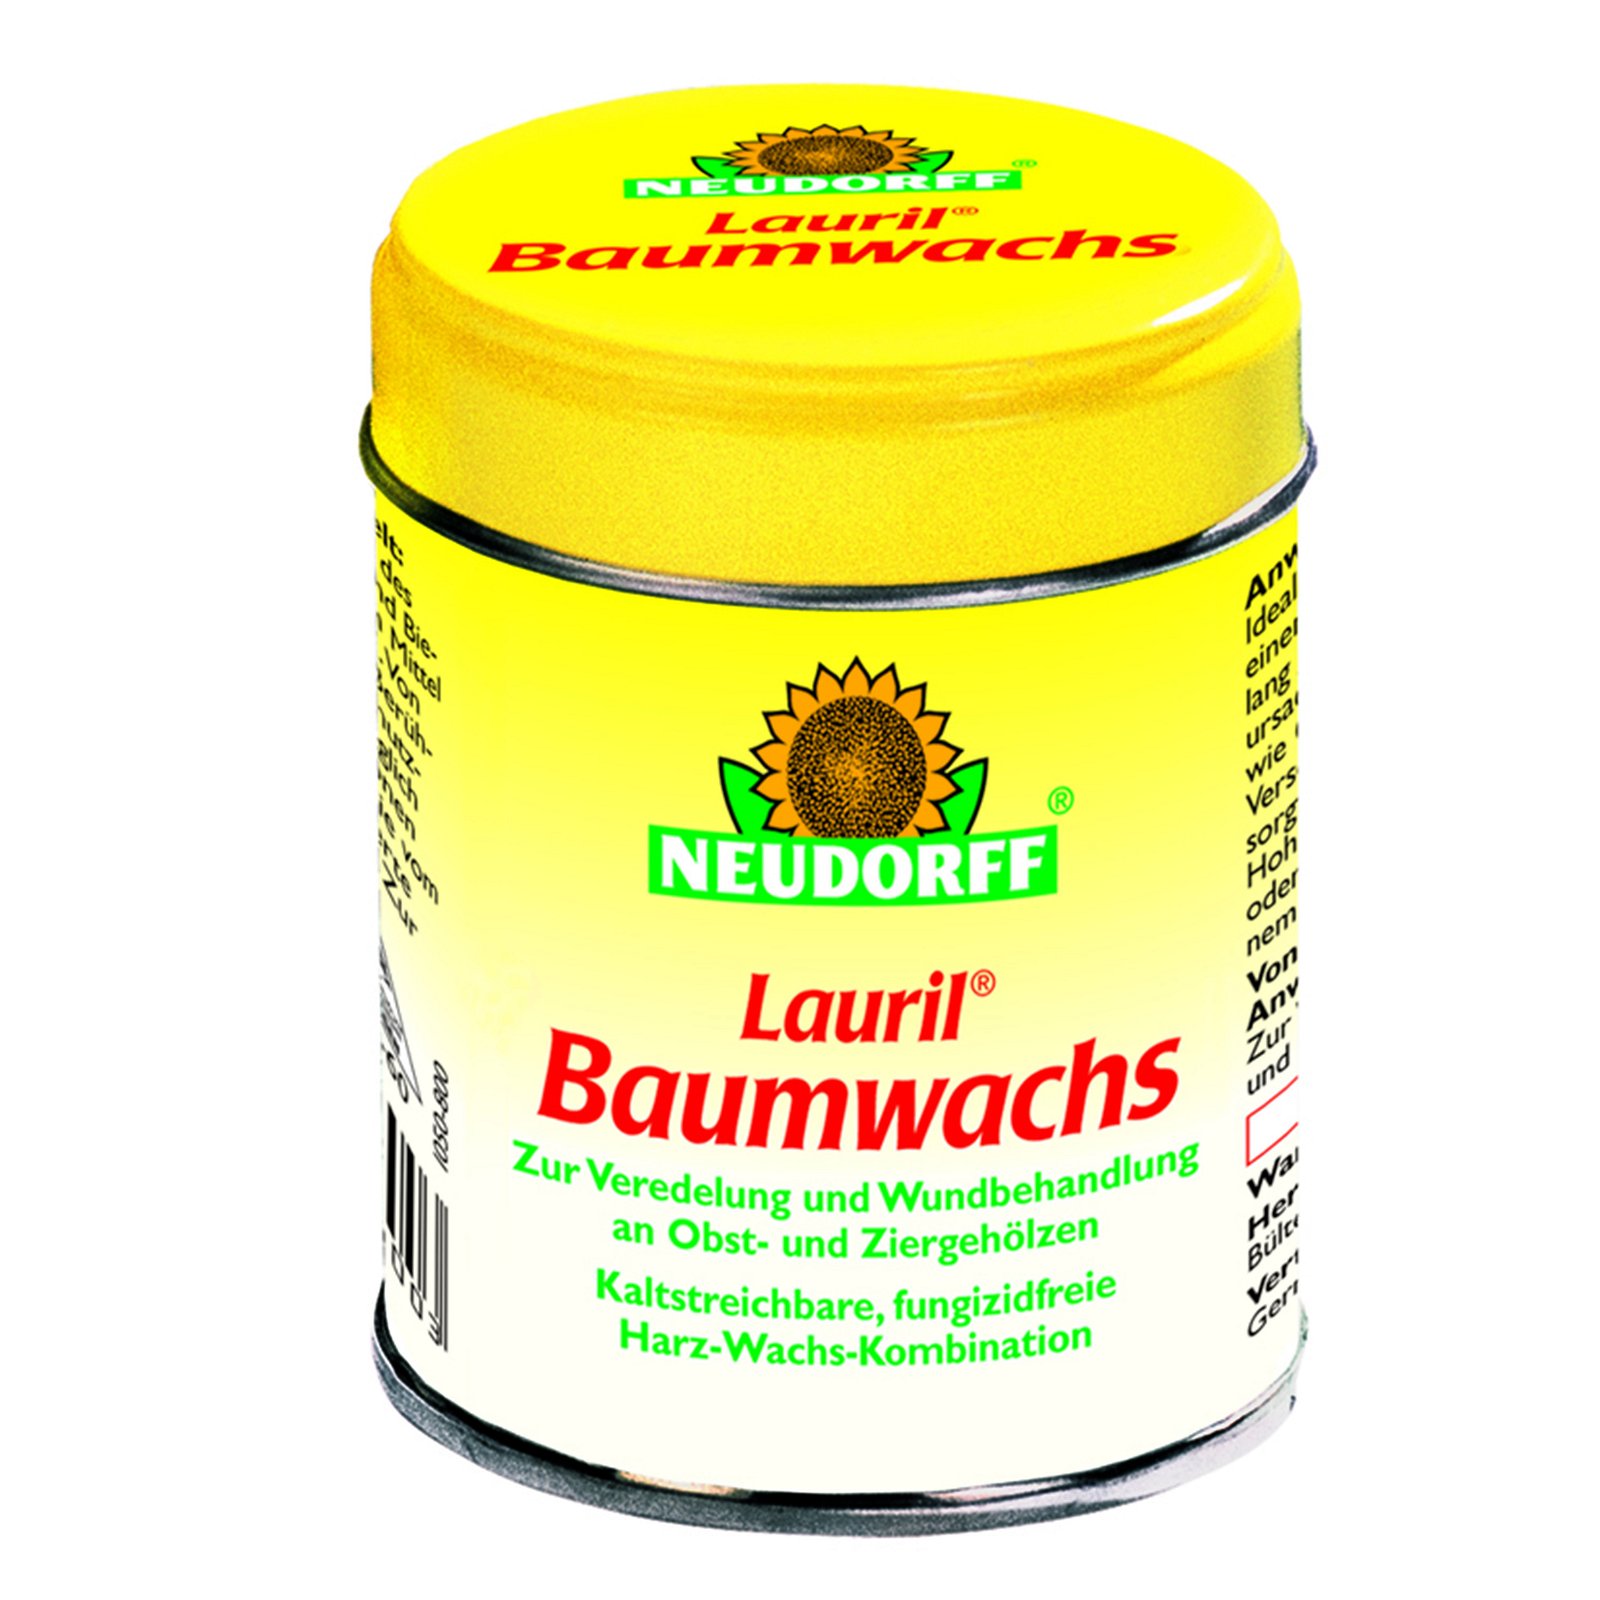 Neudorff Lauril® Baumwachs, 125 g